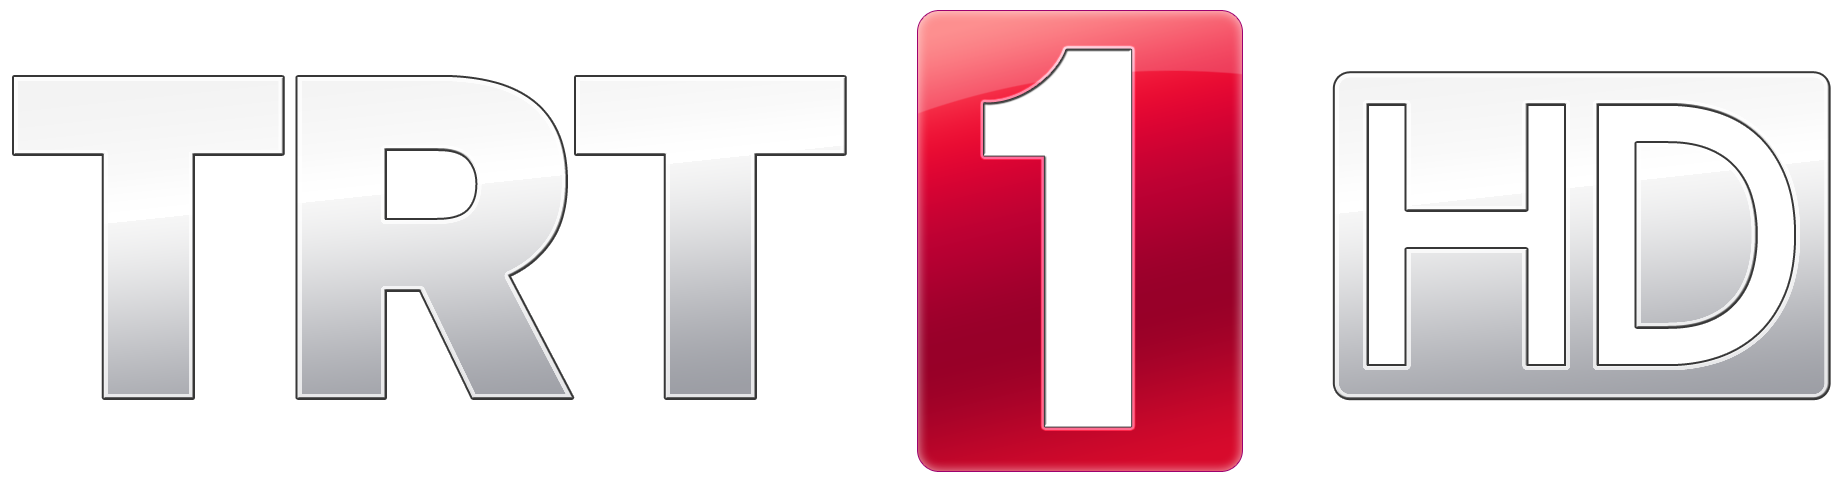 Телеканал примера 1 1. TRT 1 канал. Турецкое Телевидение логотип. ТВ первый логотип.